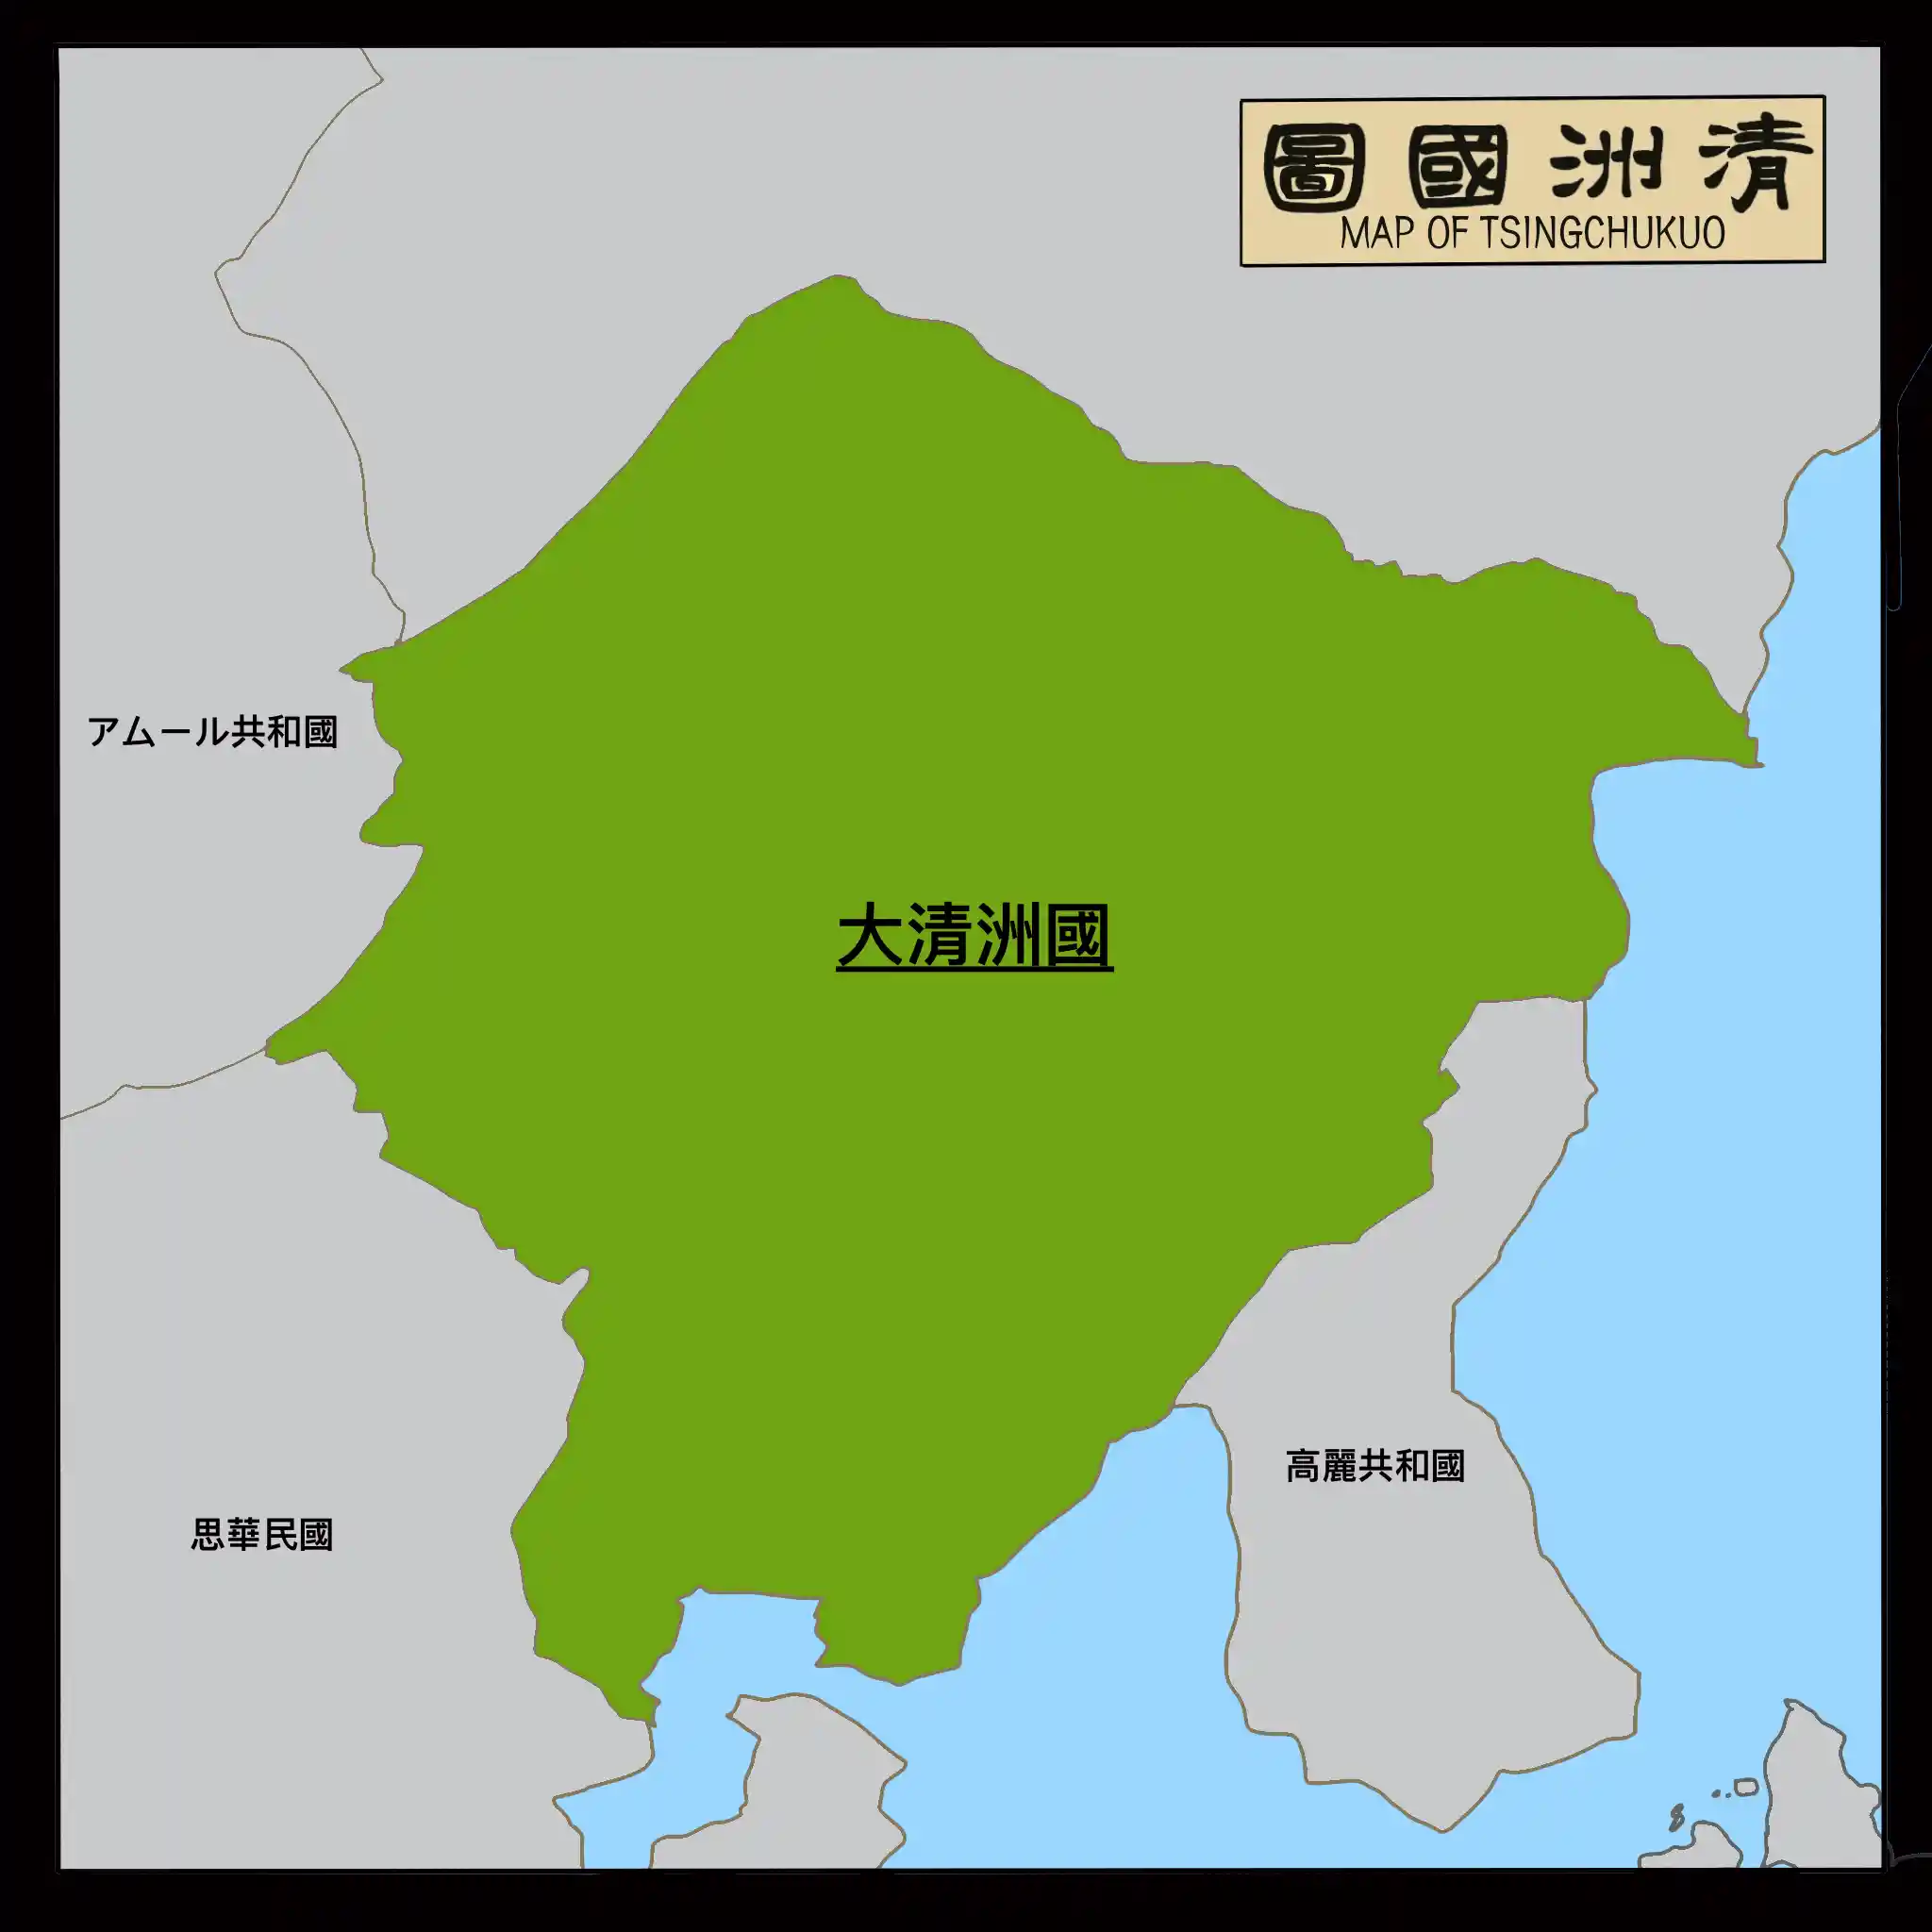 Map_of_Tsingchukuo.png